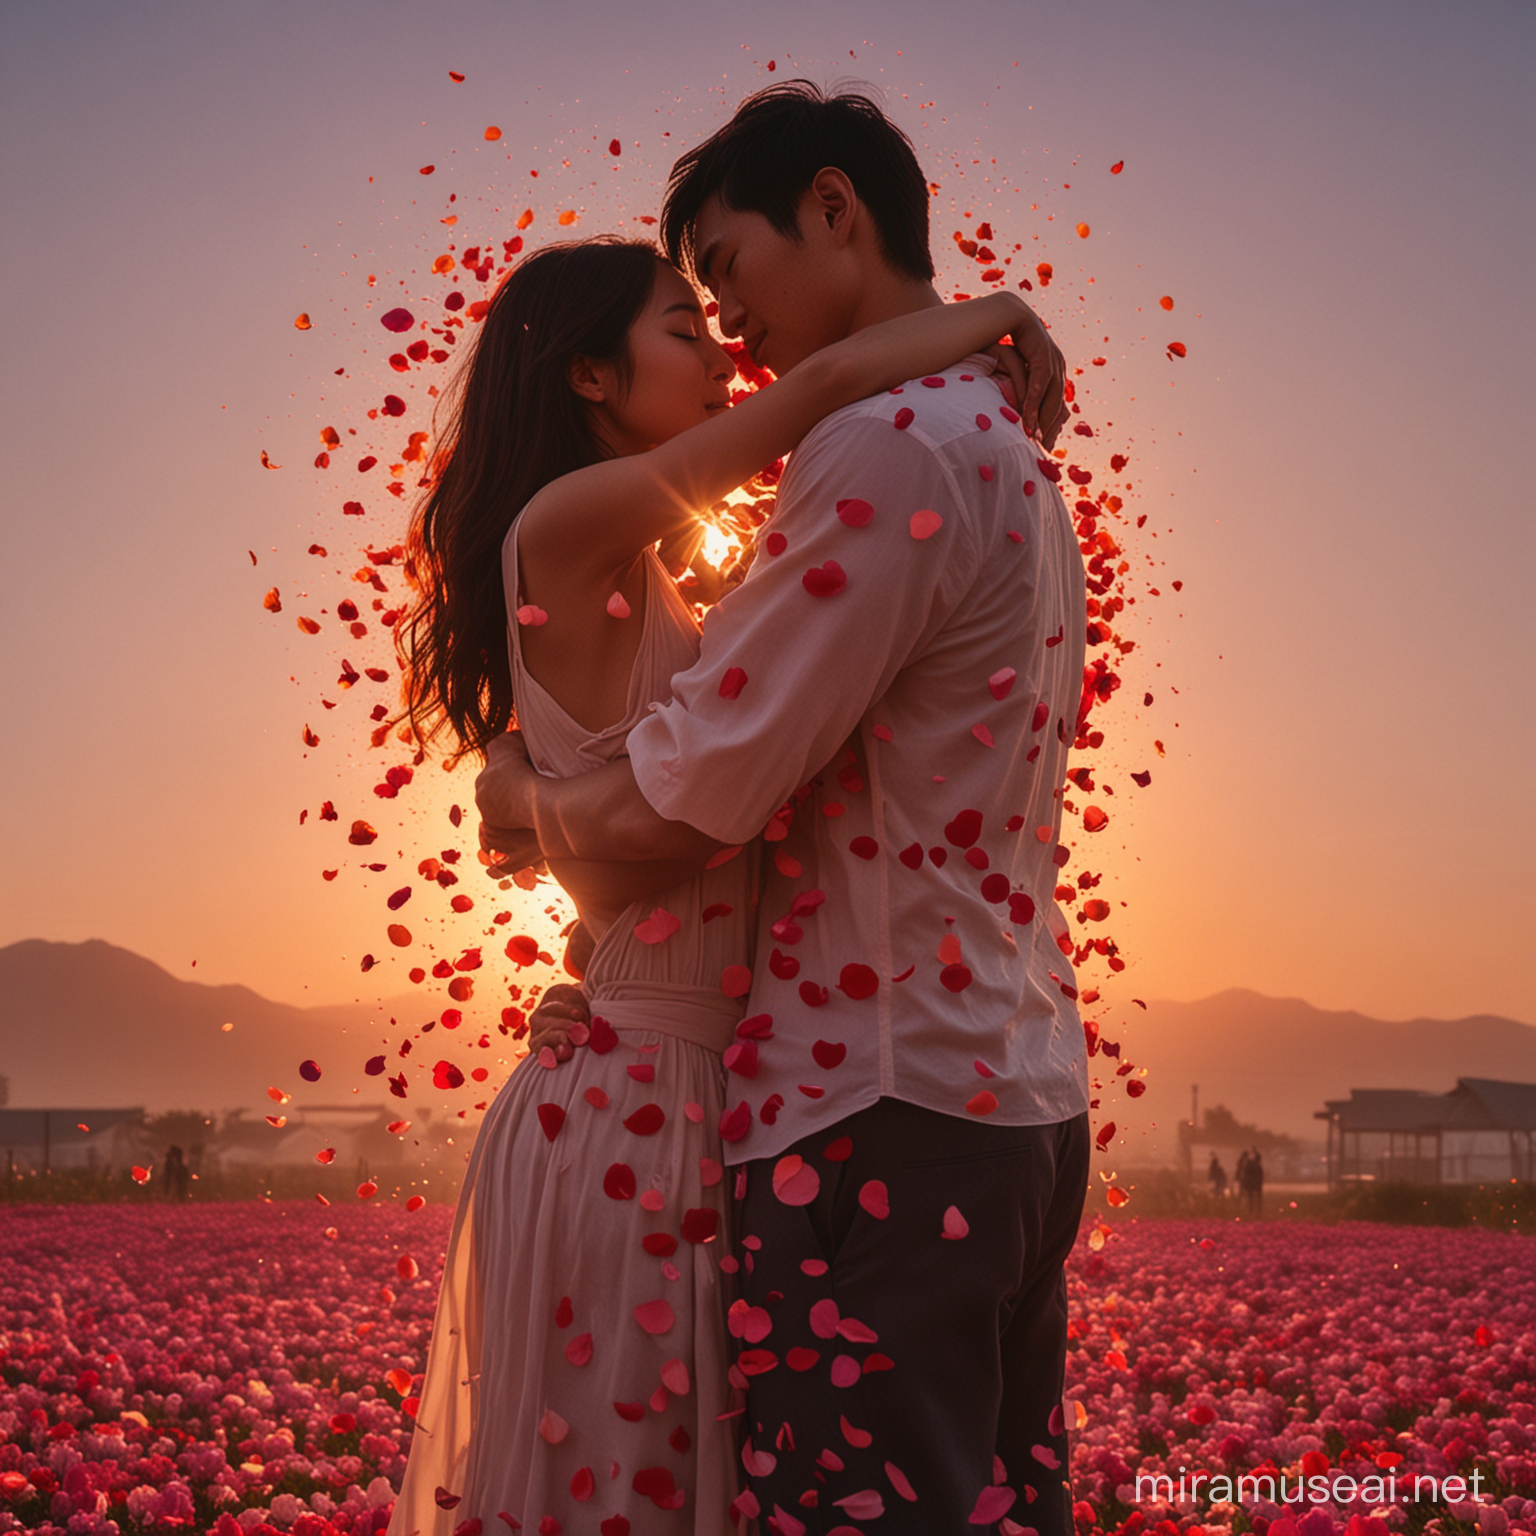 Asian Man Made of Flower Petals Embracing Girl at Sunset